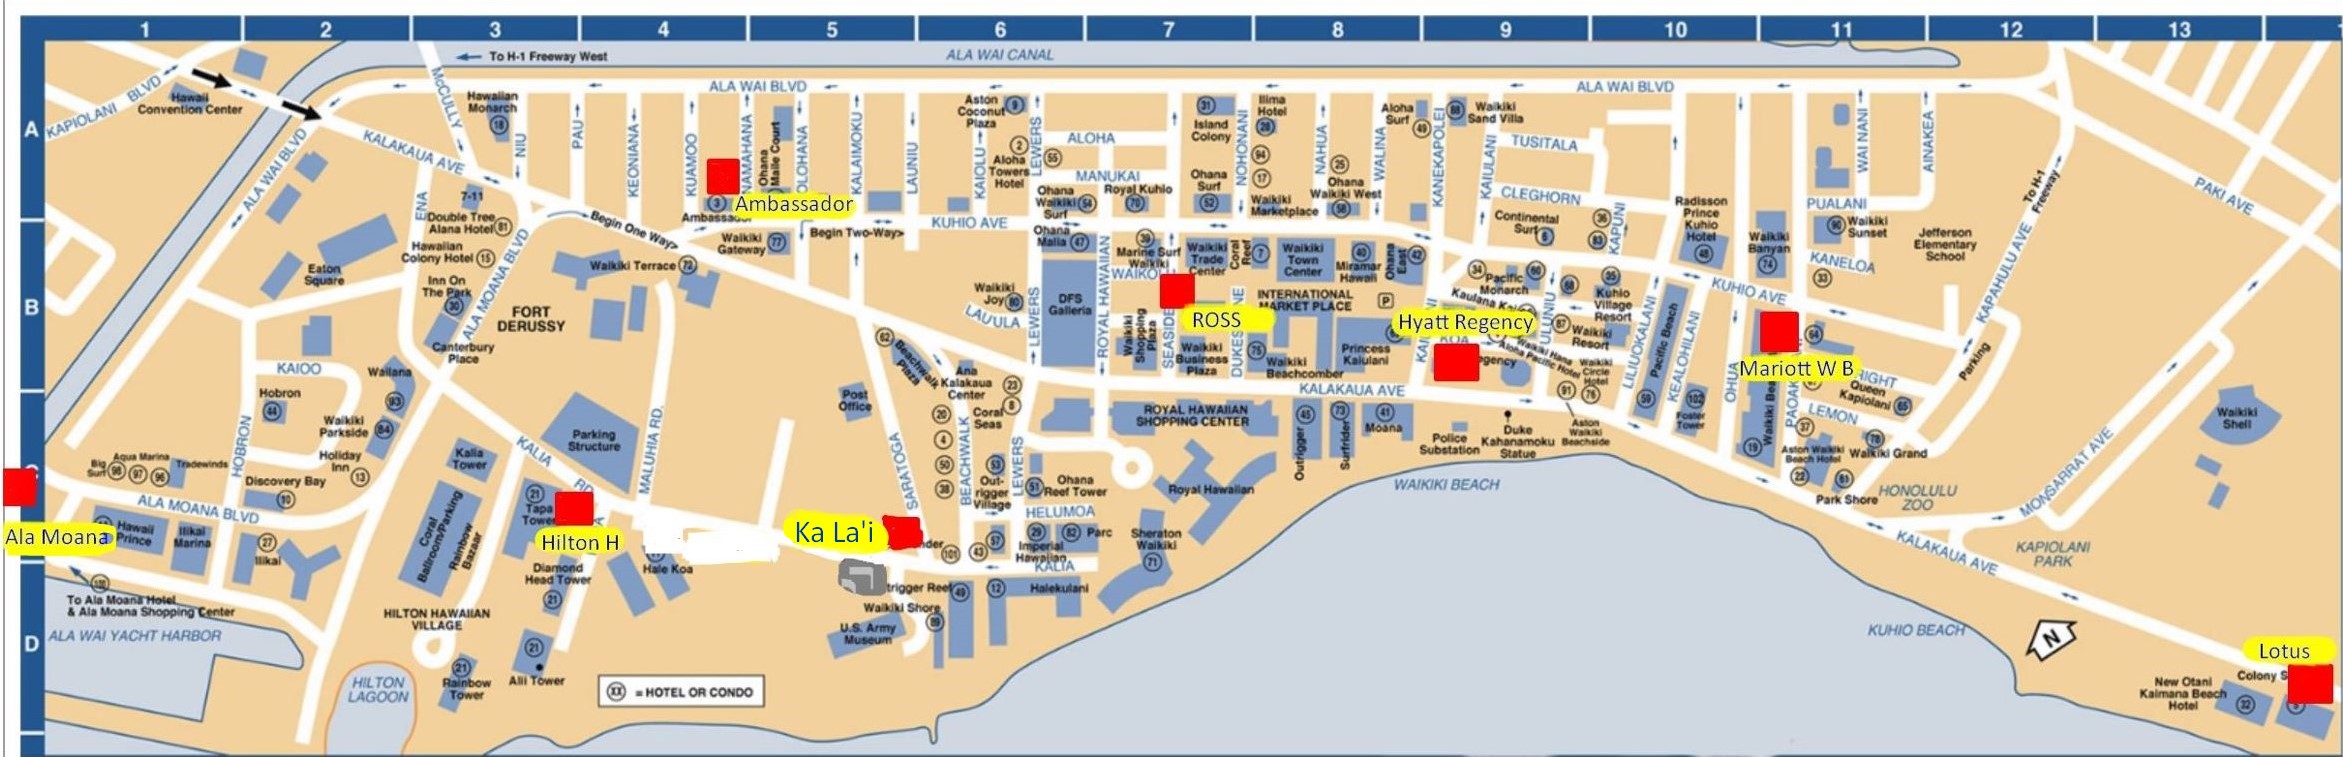 Waikiki map of meeting points